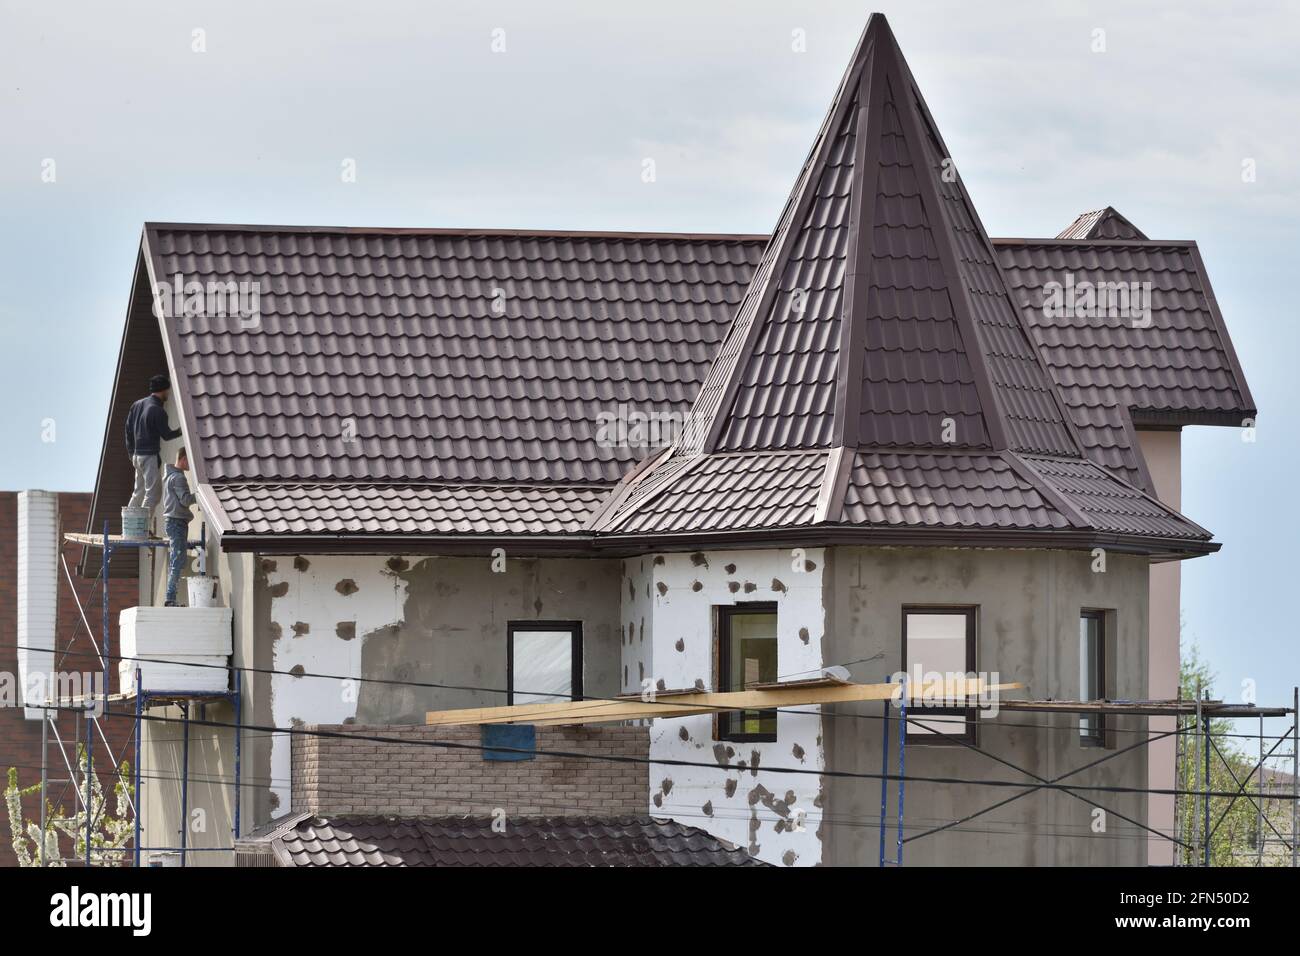 STARIY OSKOL, RUSSLAND - 14. MAI 2021: Außenisolierung der Wände des Hauses mit weißem Polystyrol Stockfoto